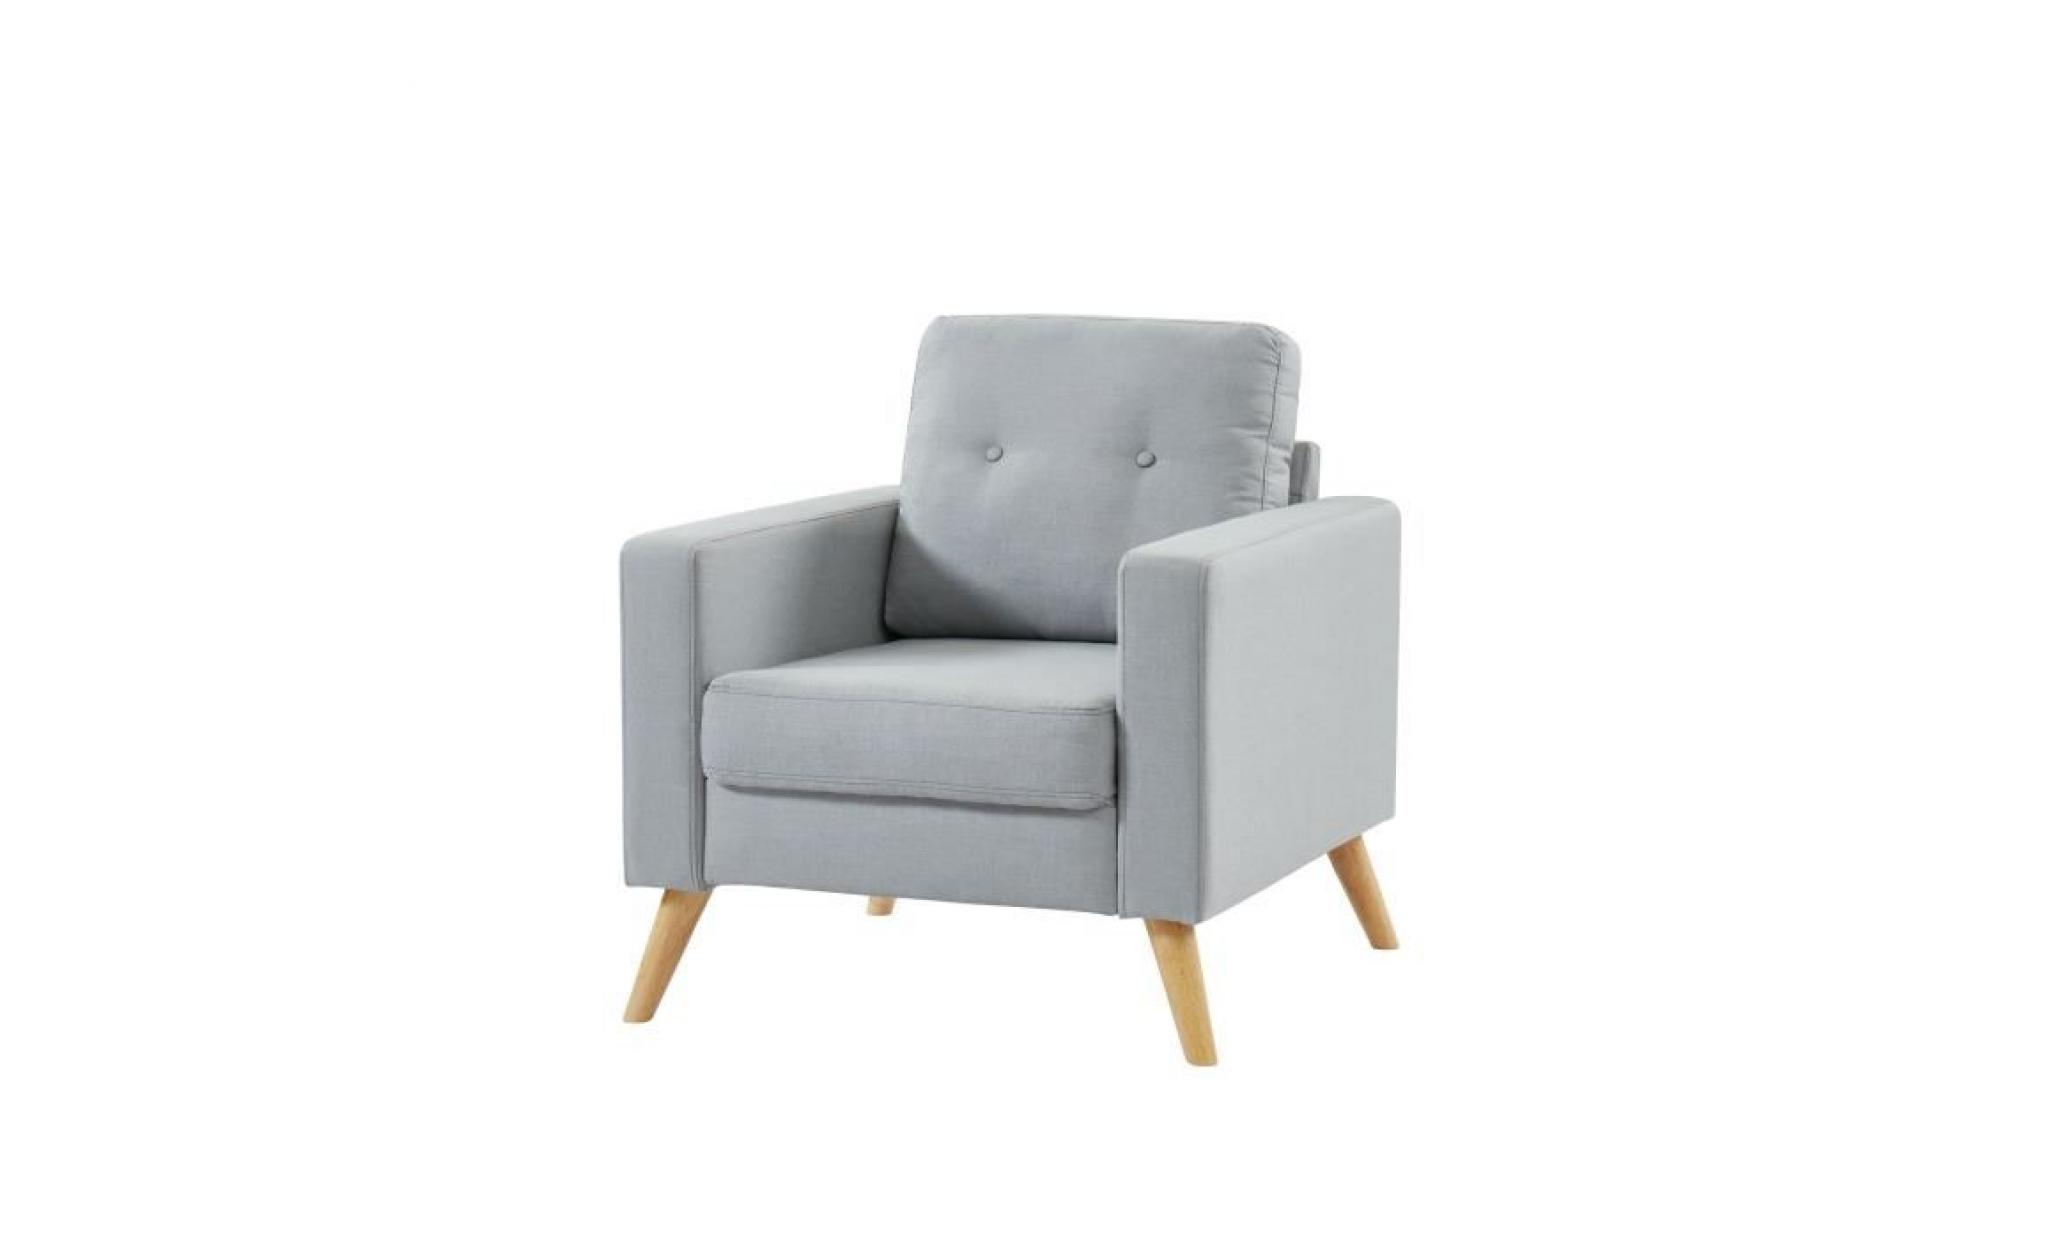 ibra fauteuil   tissu gris clair   scandinave   l 80 x p 83 cm pas cher